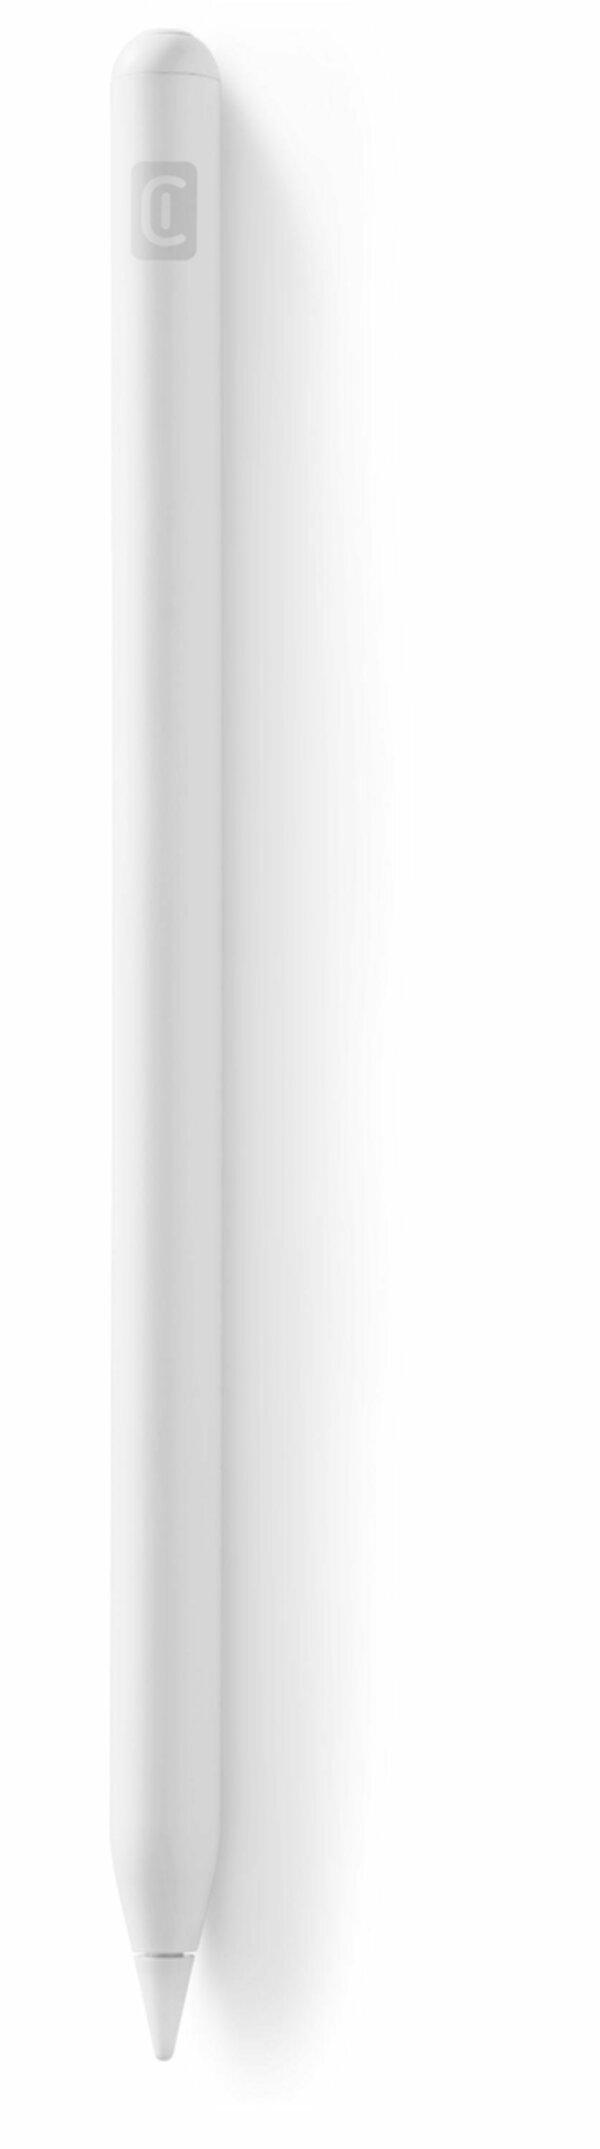 Bild 1 von Stylus Pen Pro iPad White (60254) Eingabestift